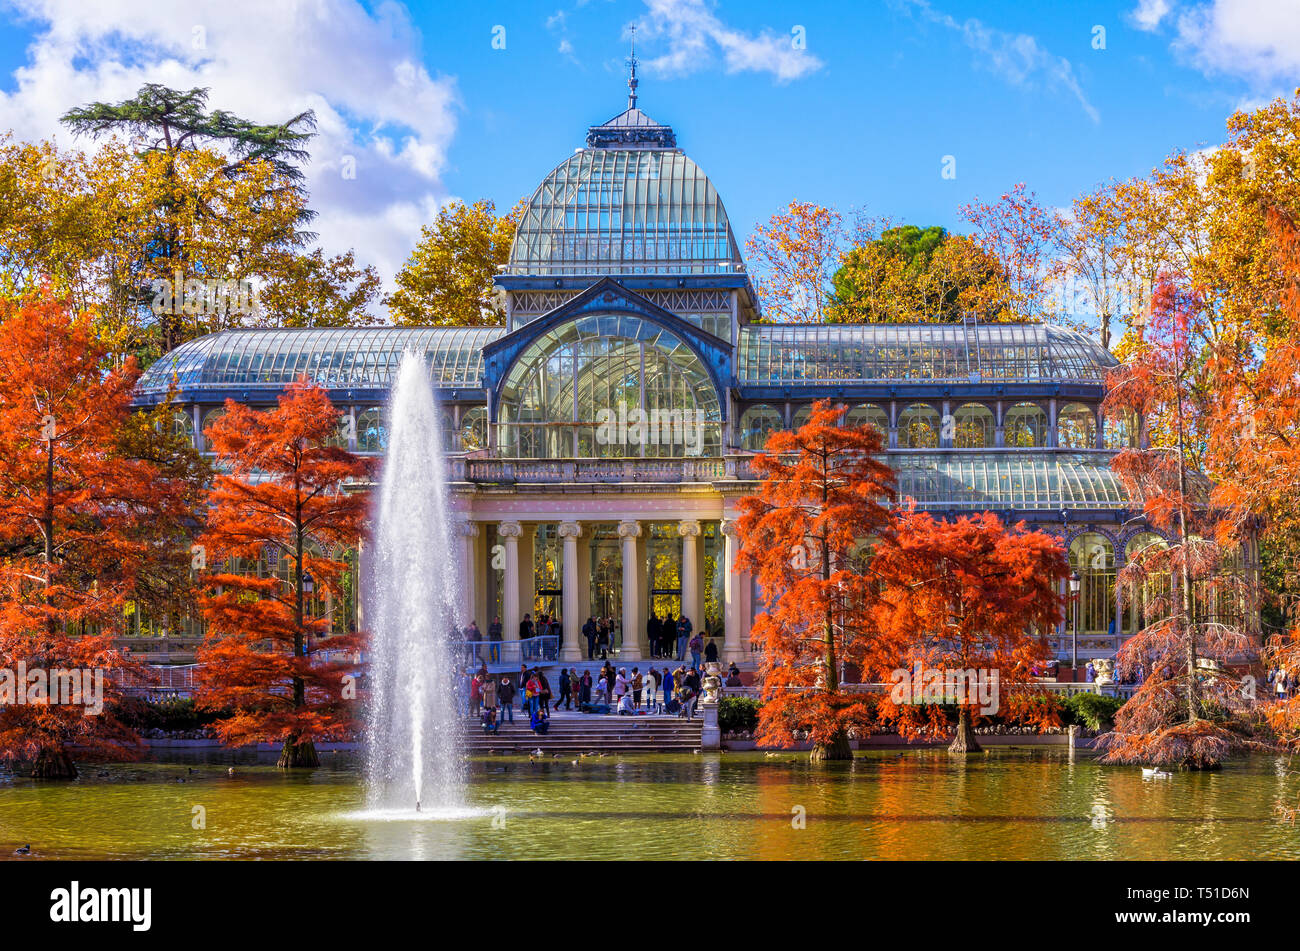 Palacio de Cristal en el Parque de El Retiro. Madrid. España Stock Photo -  Alamy